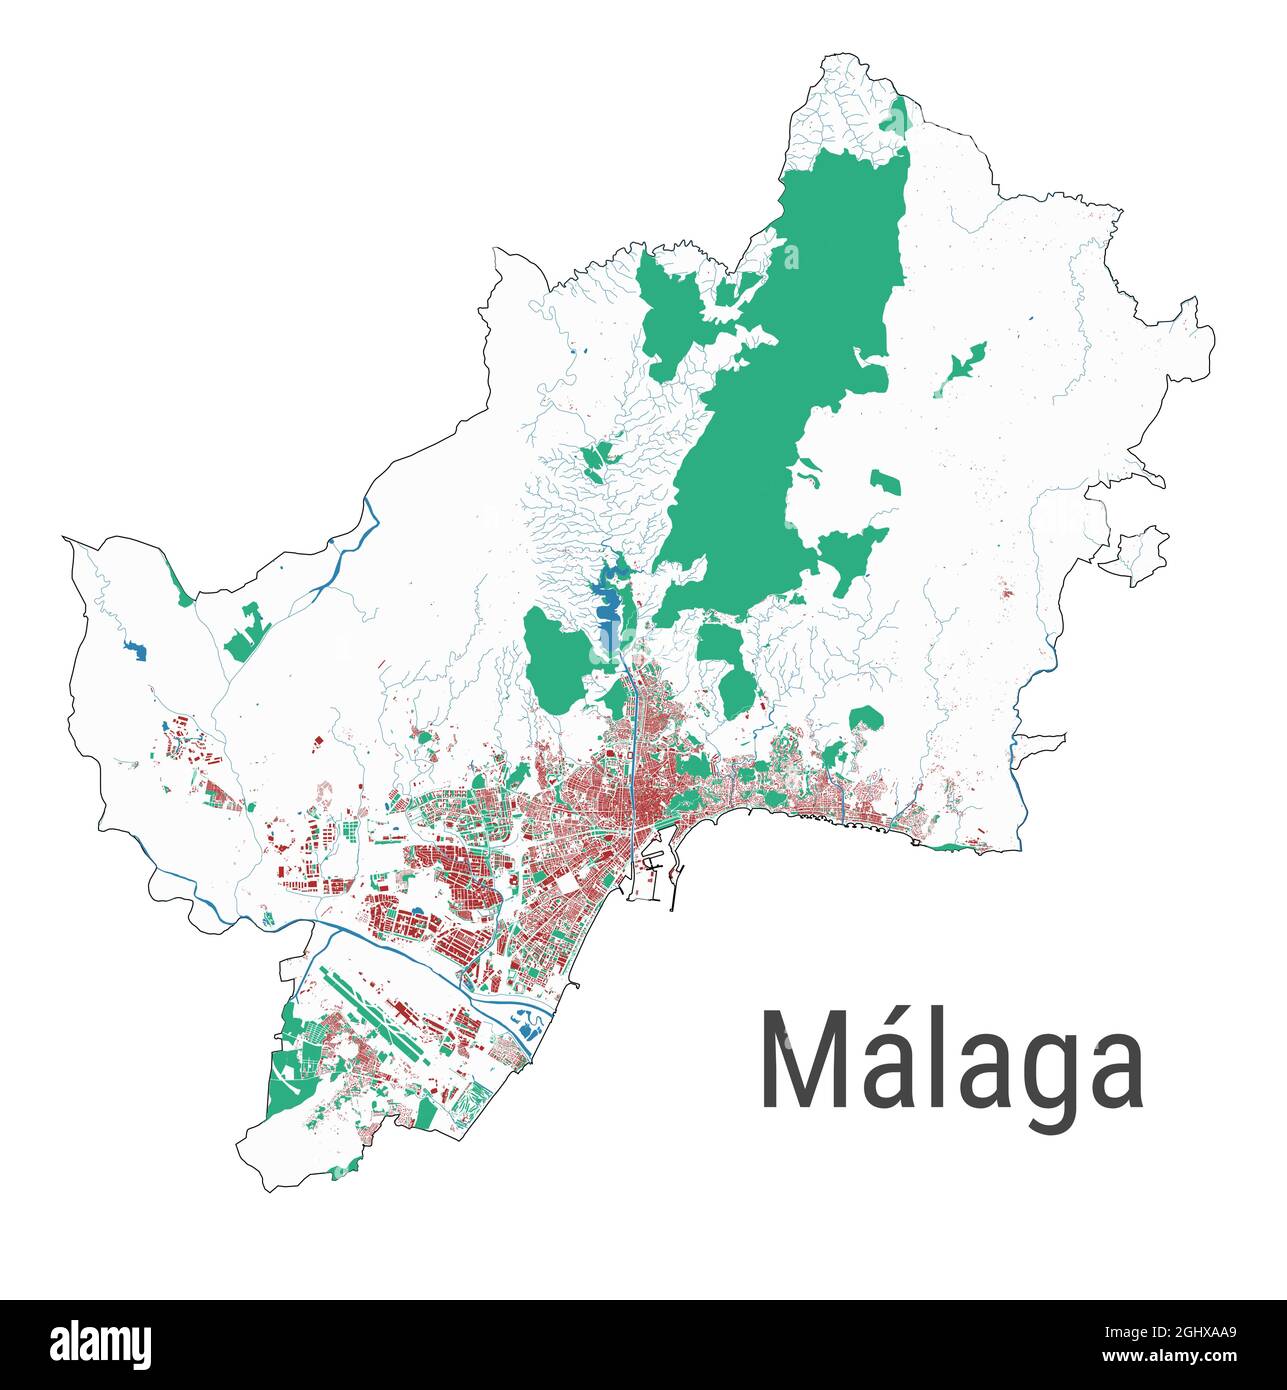 Karte von Malaga. Detaillierte Karte des Verwaltungsgebiets der Stadt Malaga. Stadtbild-Panorama. Lizenzfreie Vektorgrafik. Übersichtskarte mit Autobahnen, Straßen, Stock Vektor